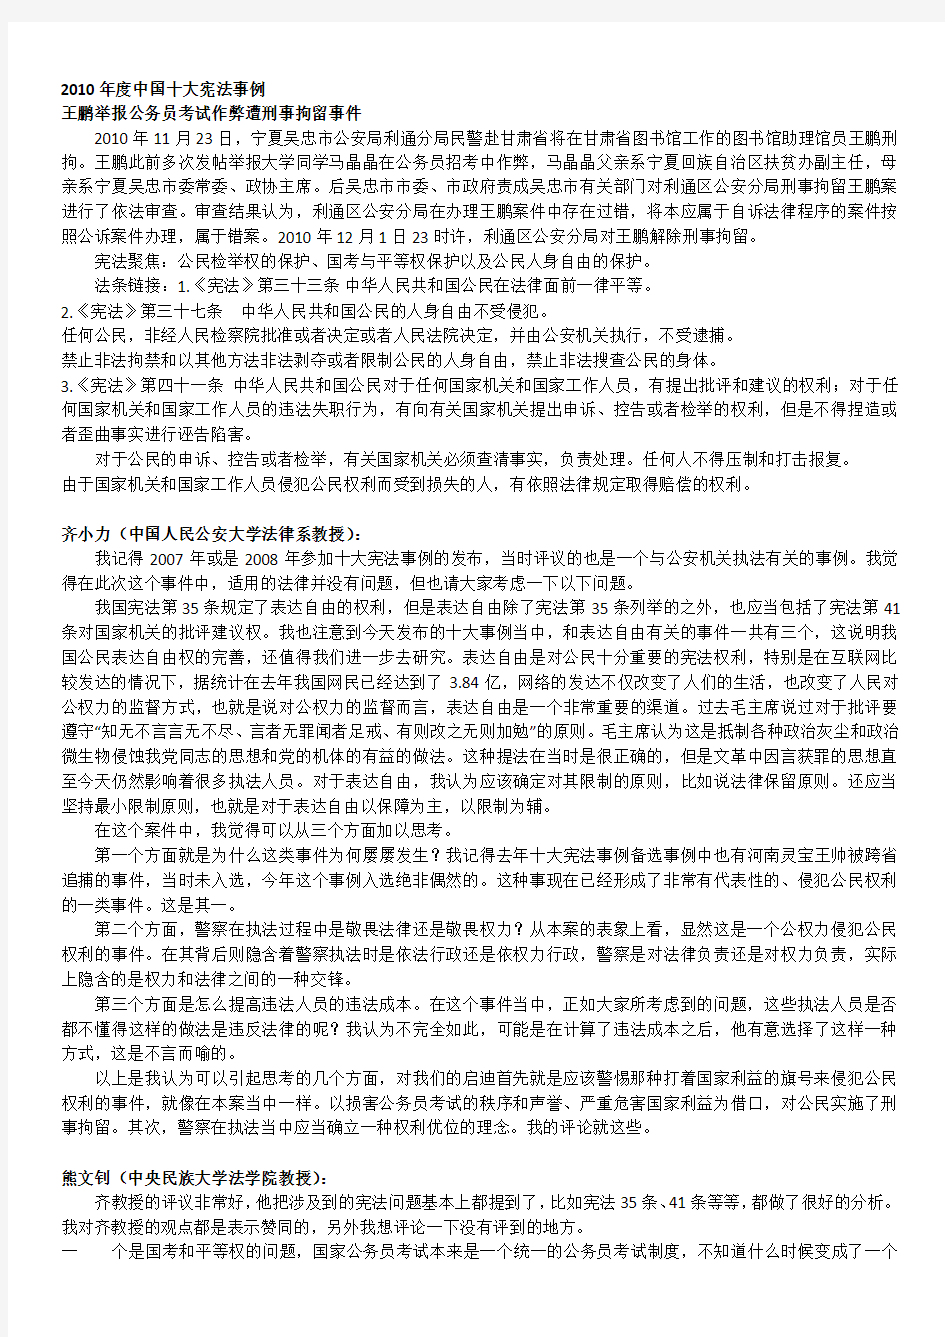 王鹏举报公务员考试作弊遭刑事拘留事件